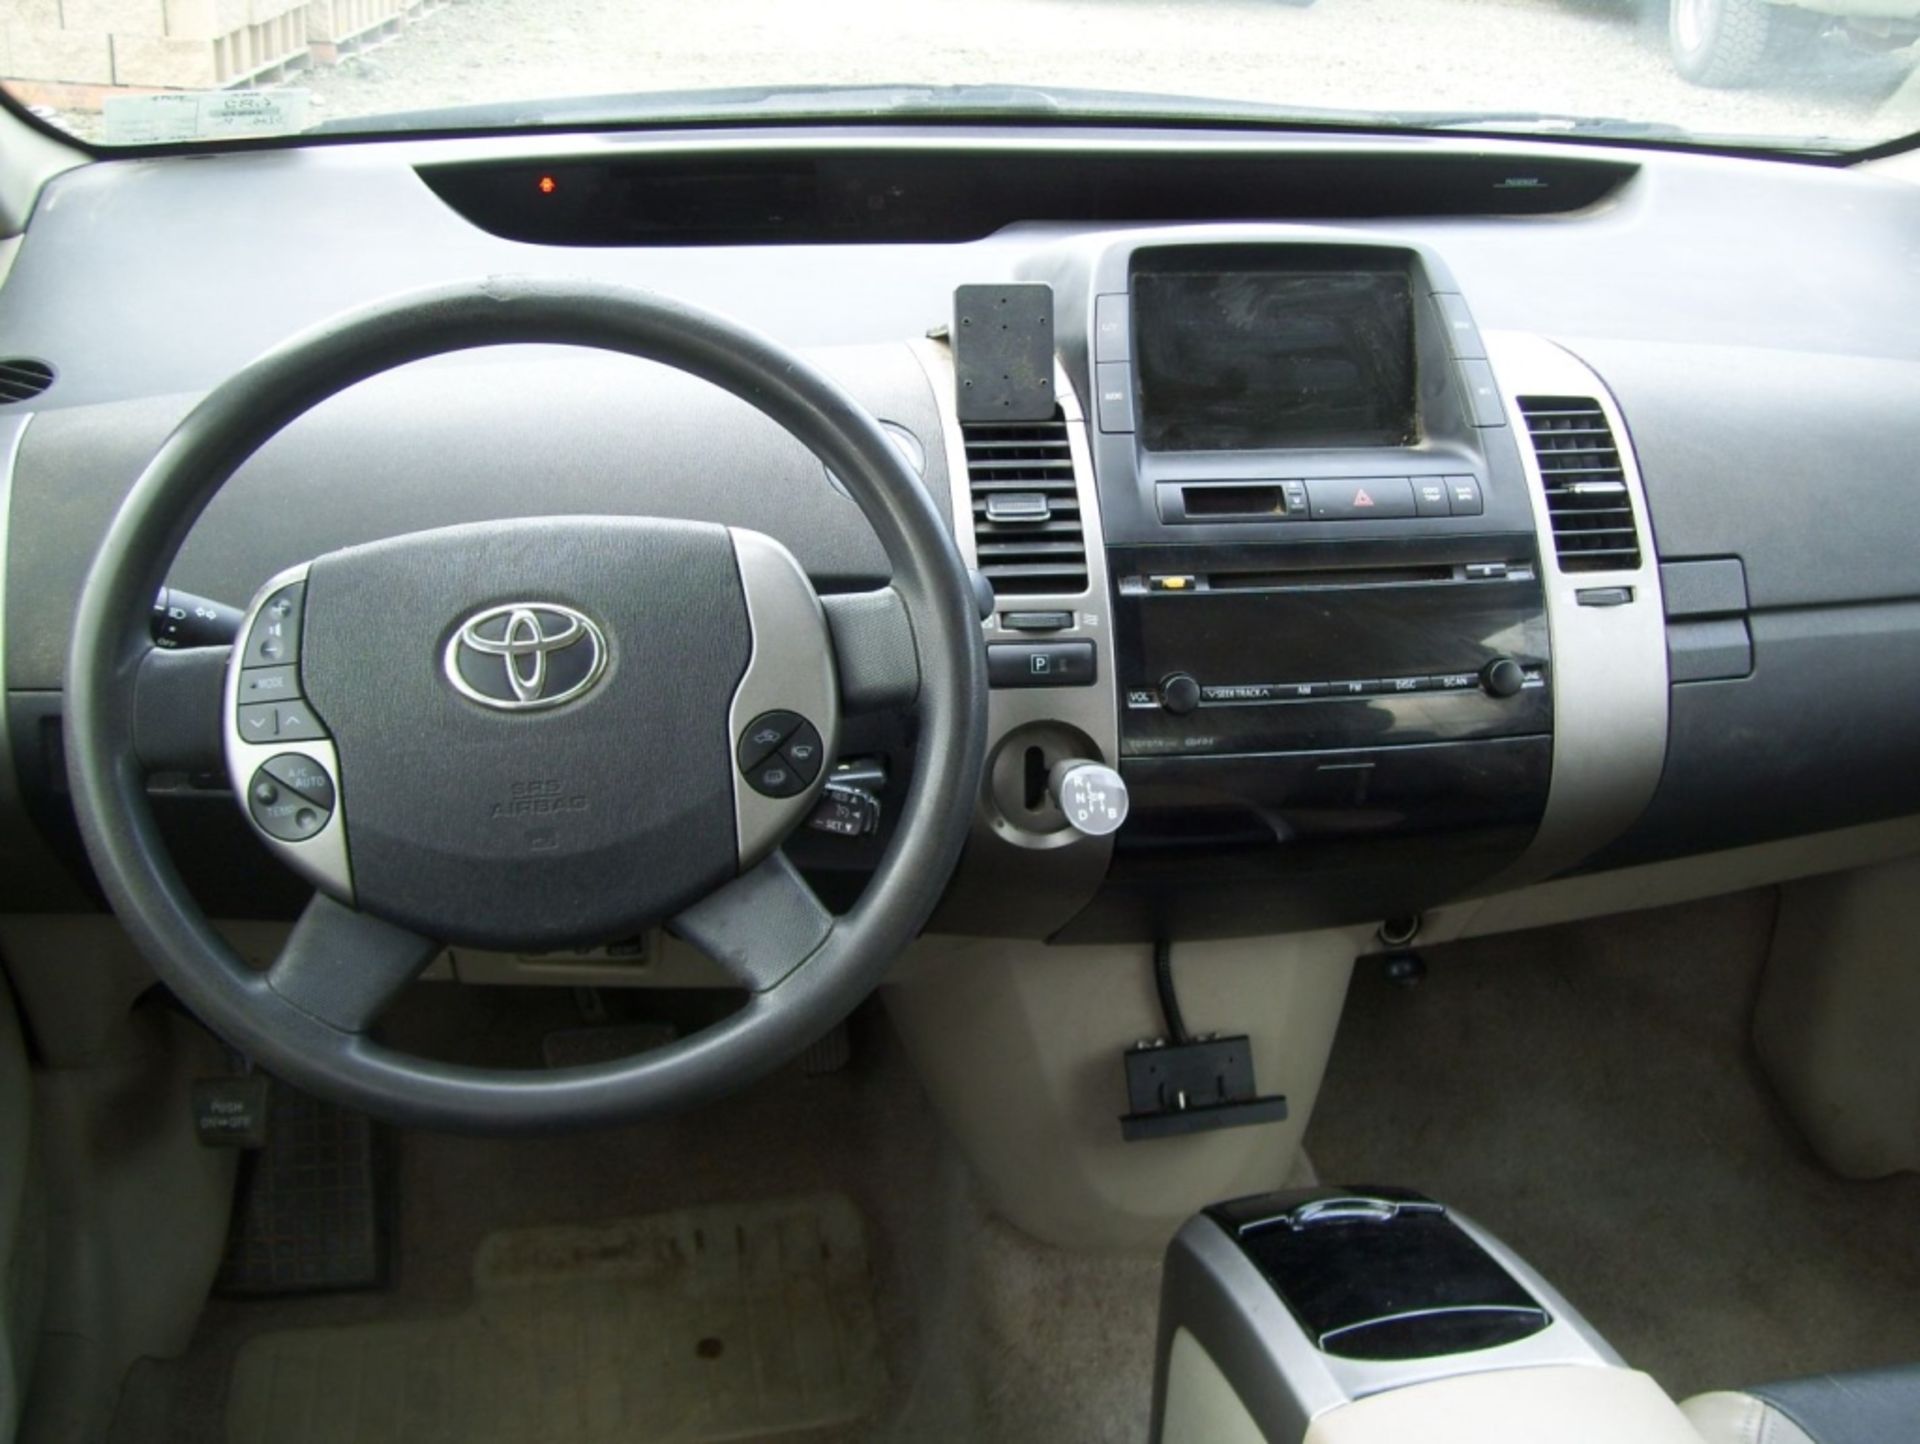 Toyota Prius Sedan, - Image 12 of 19